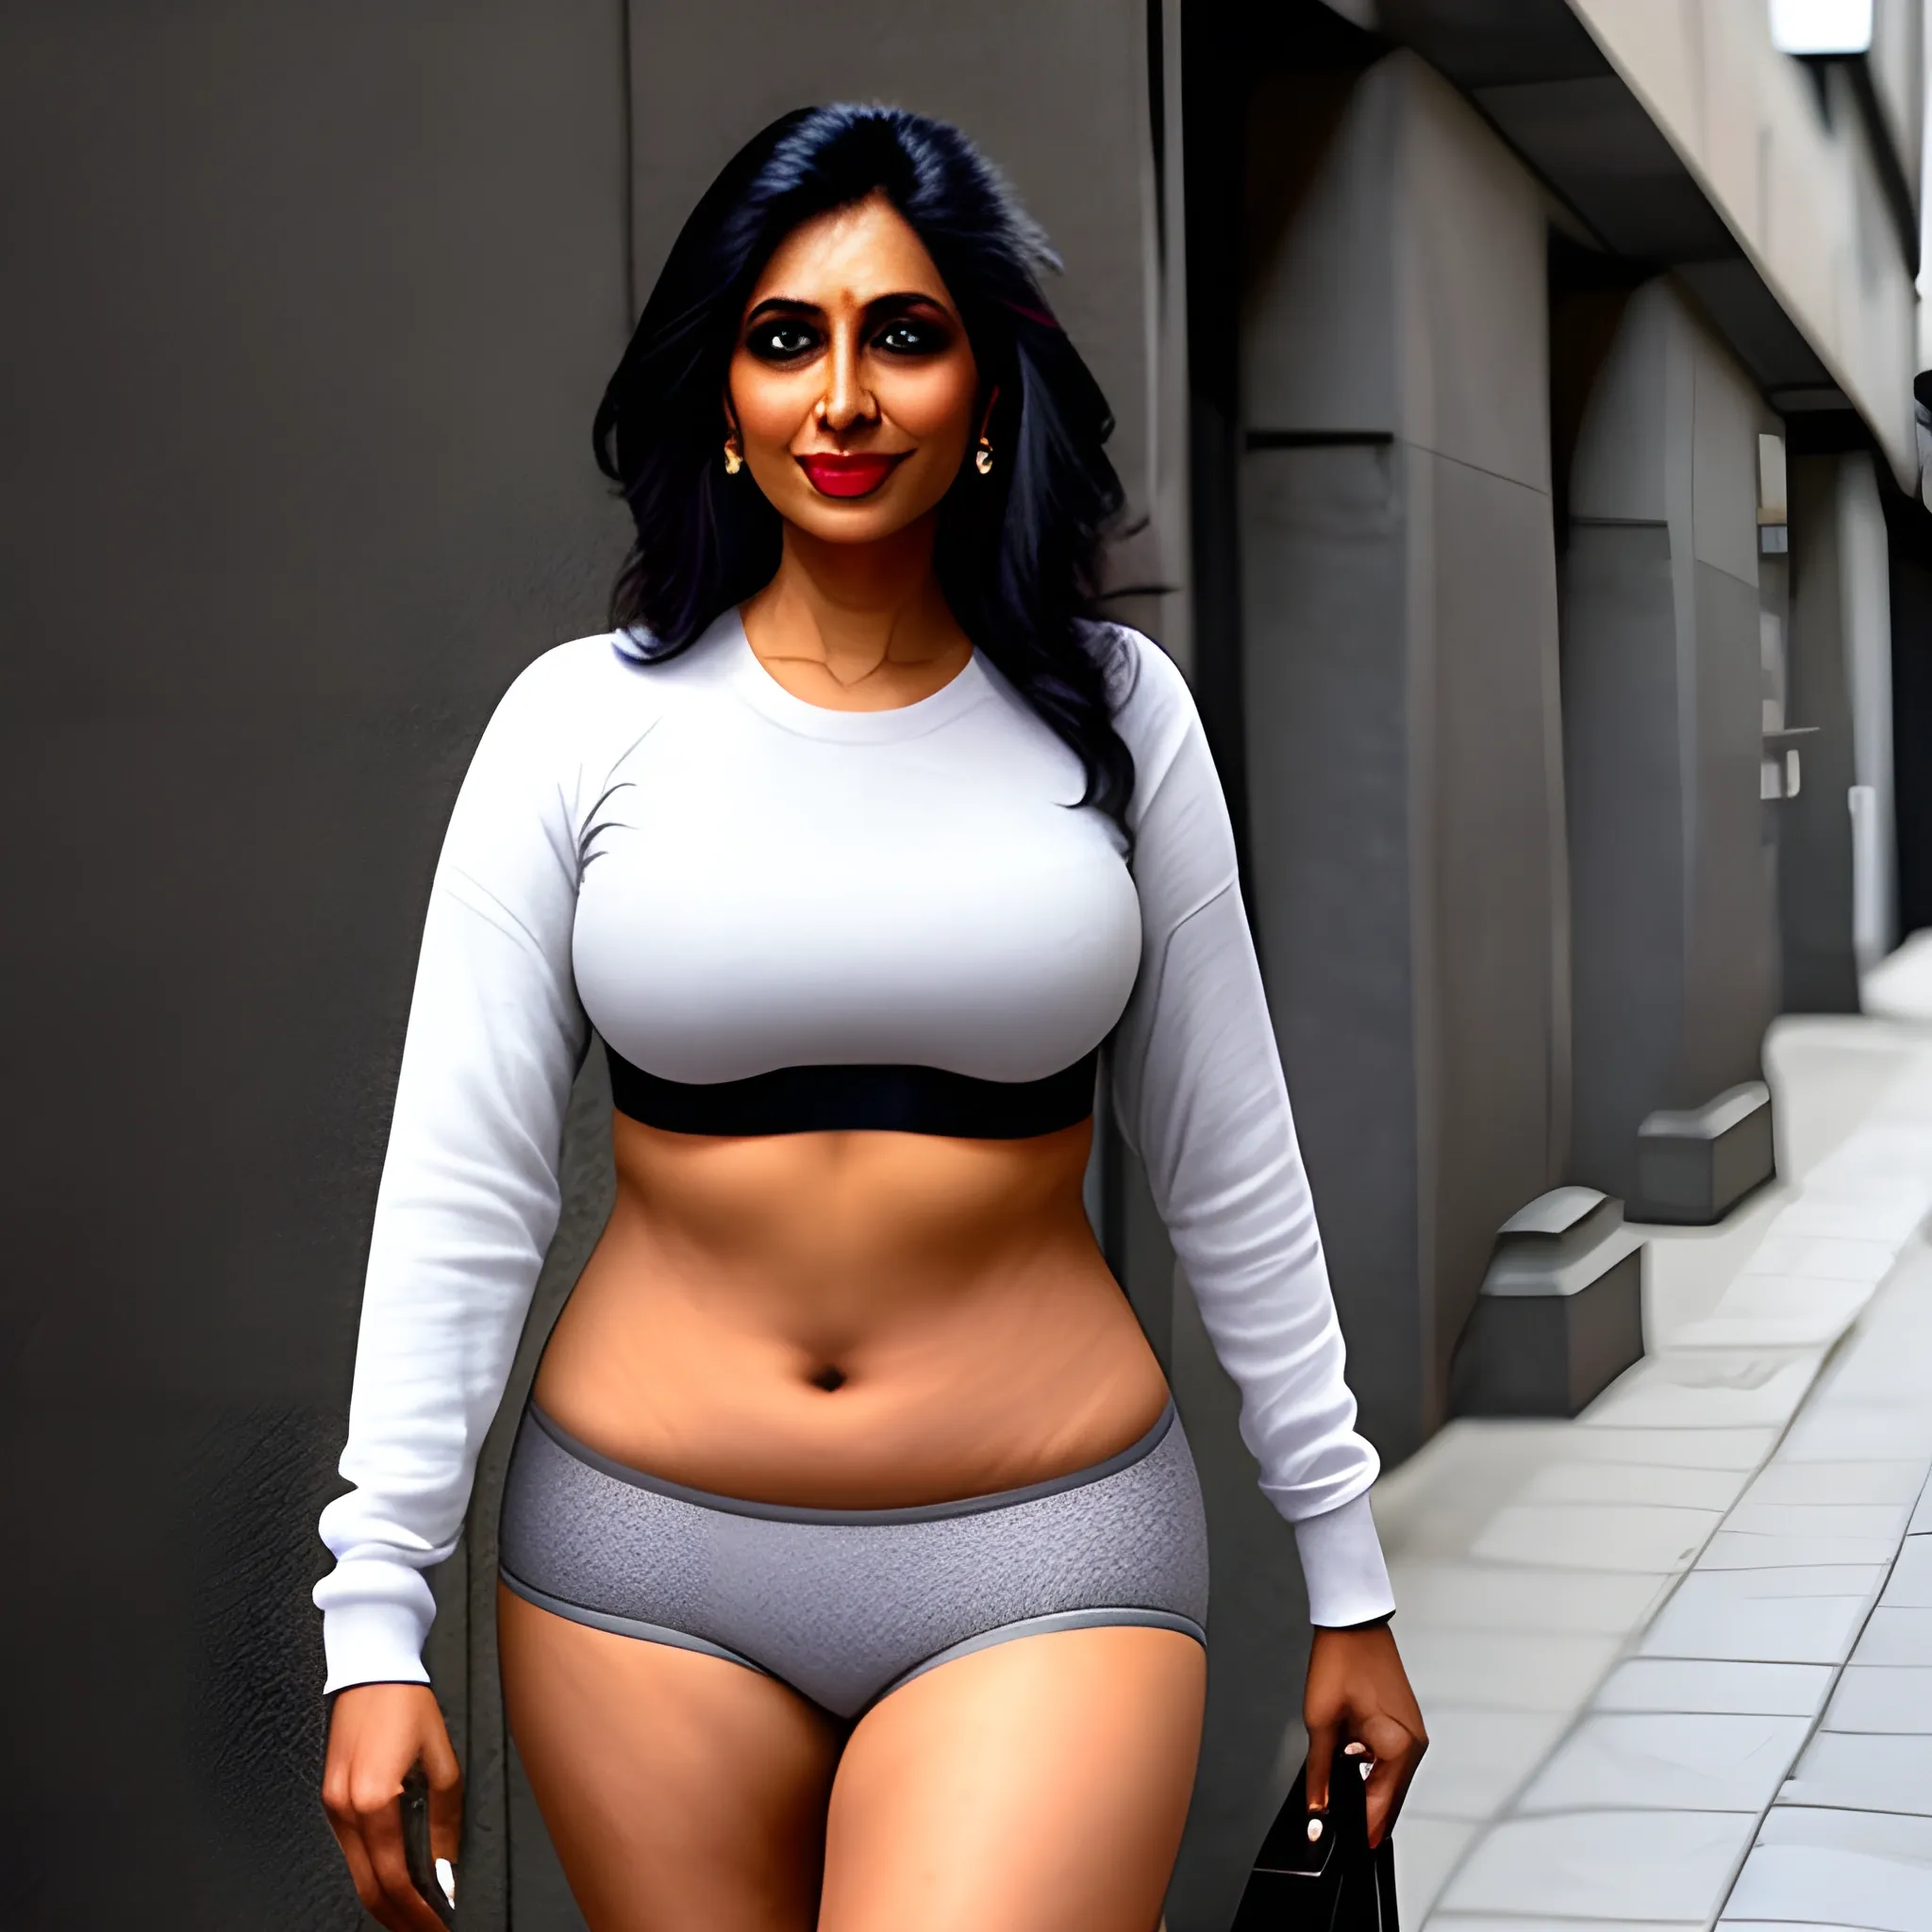 indian girl wearing gray underwear, street style 